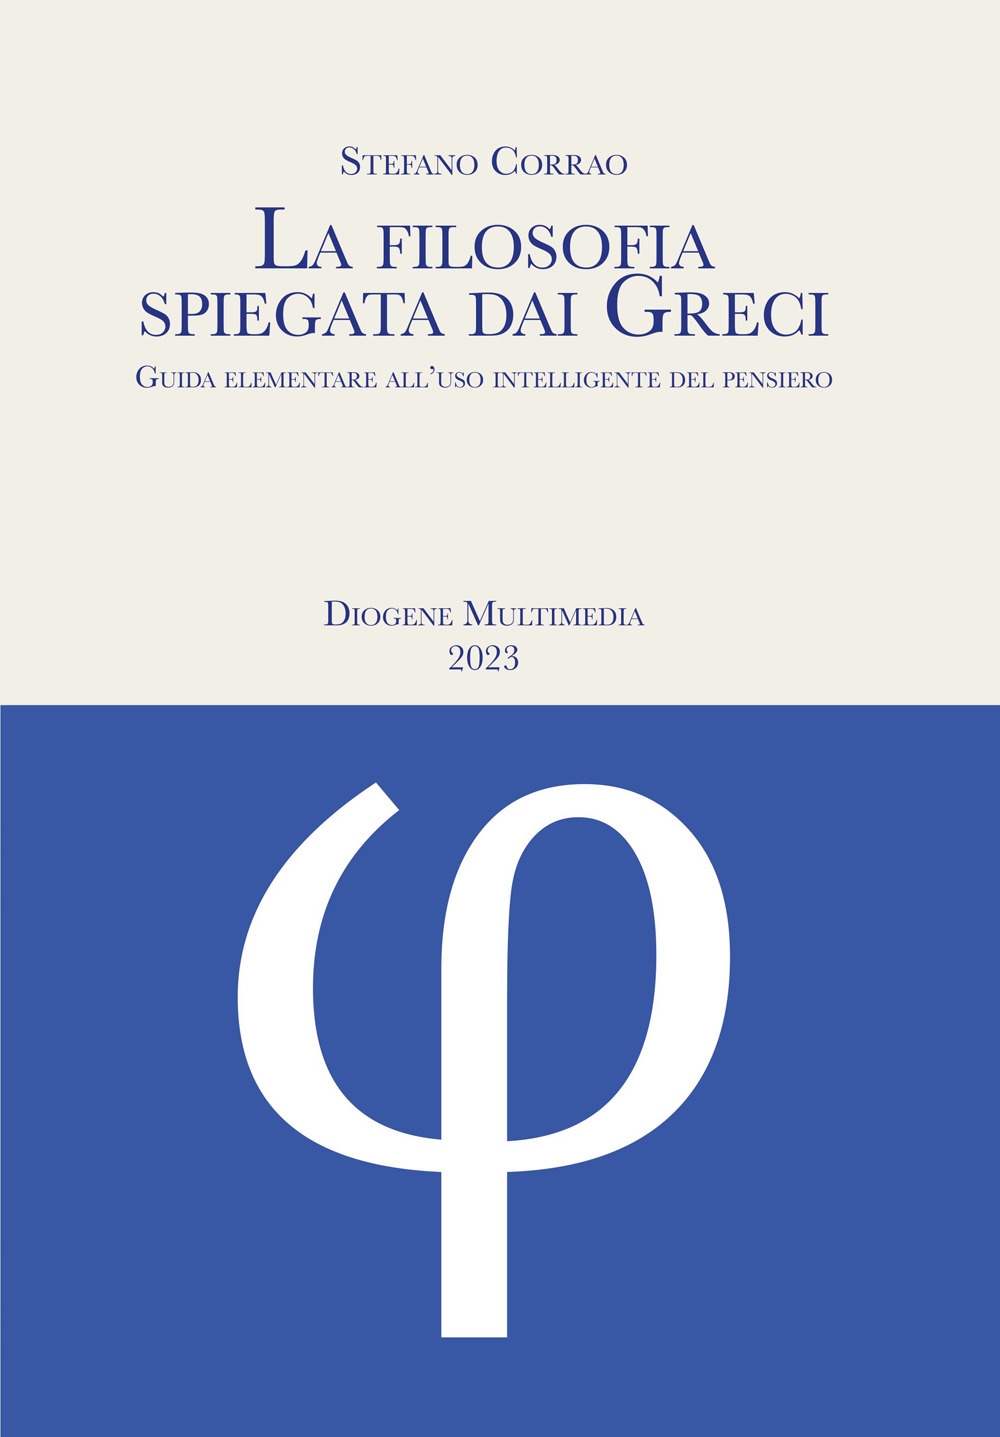 La filosofia spiegata dai greci. Guida elementare all'uso intelligente del pensiero